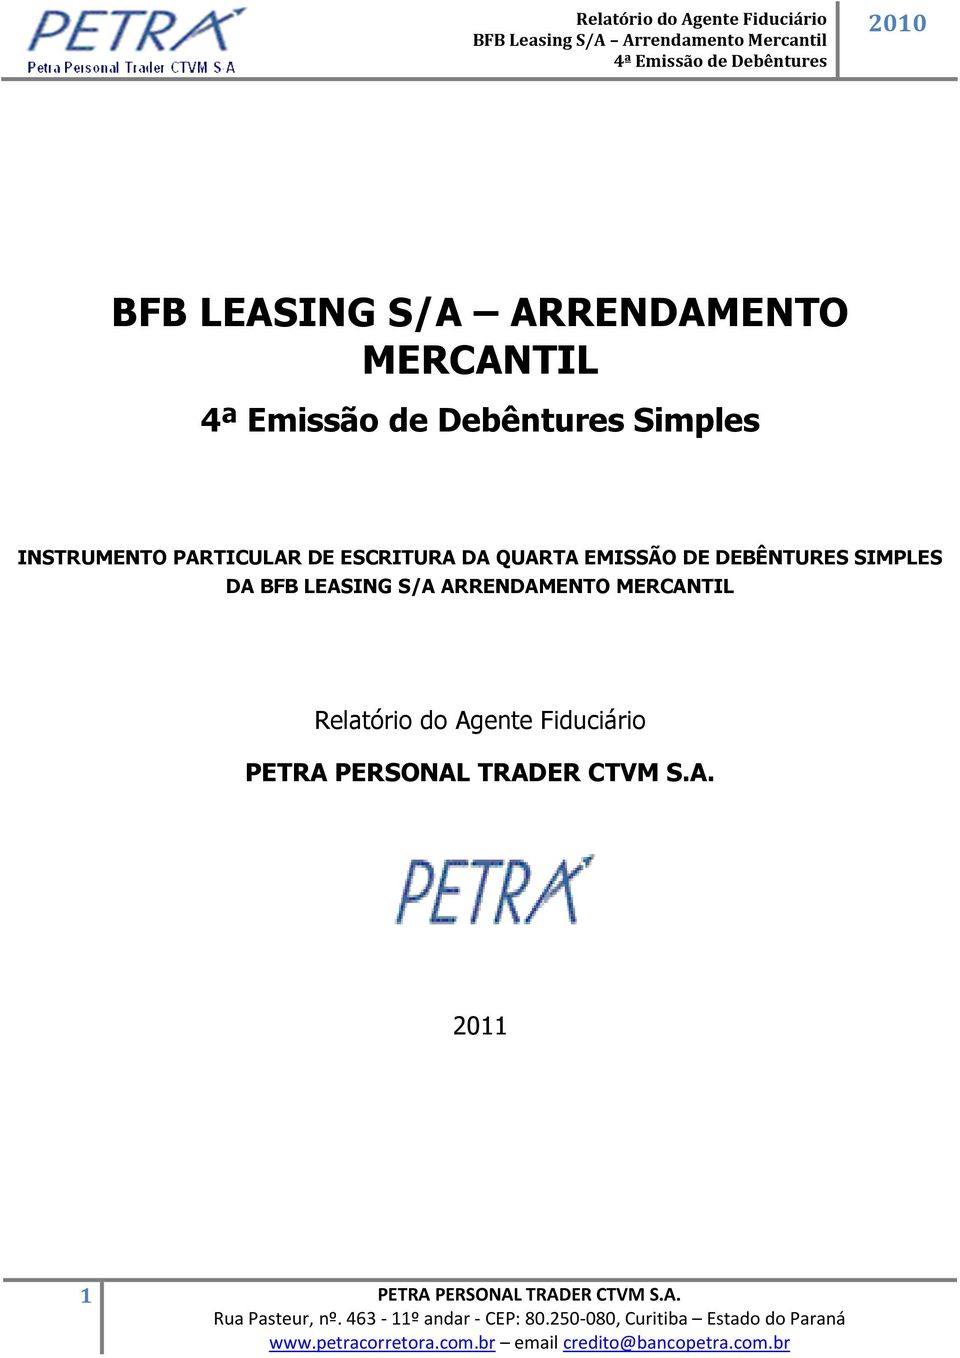 BFB LEASING S/A ARRENDAMENTO MERCANTIL Relatório do Agente